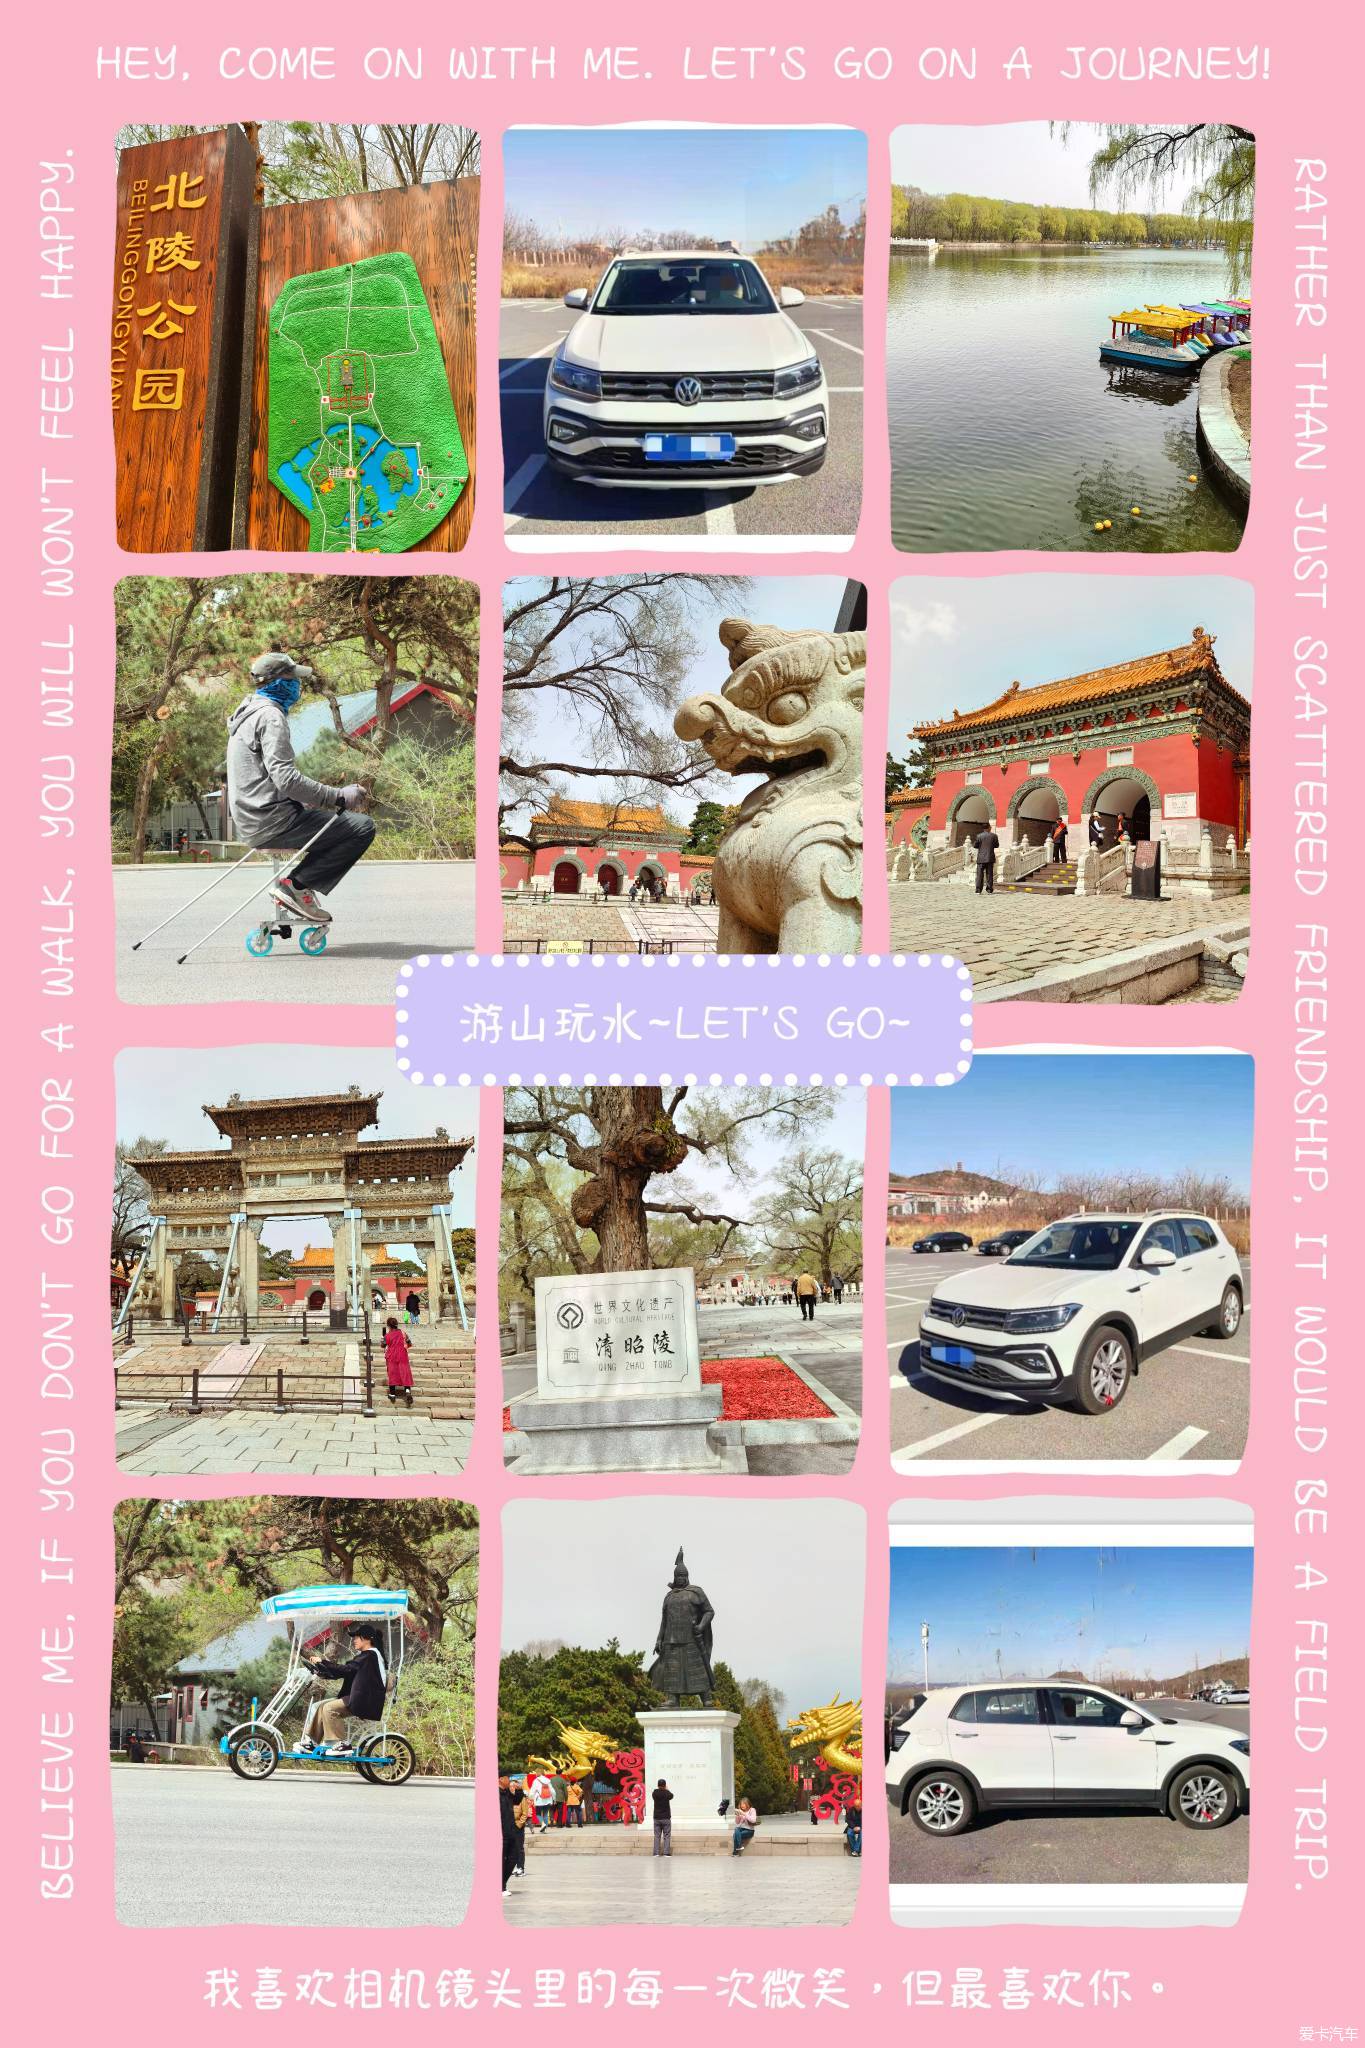 【春与夏之记】假期过后驾途铠带老妈游览沈阳北陵公园